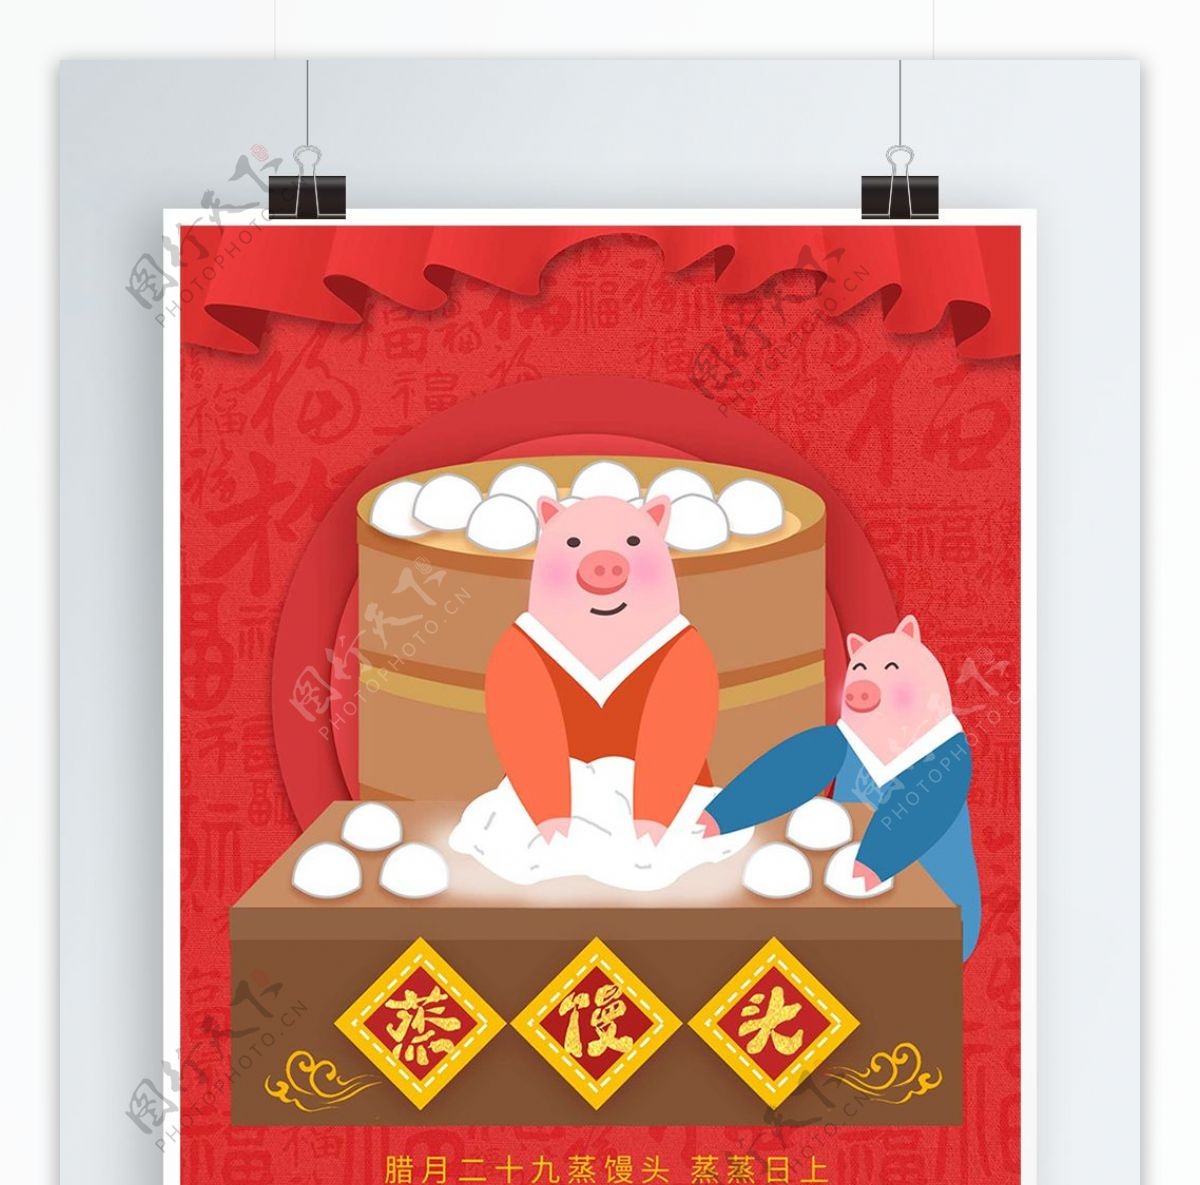 原创手绘中国风创意腊月习俗蒸馒头节日海报